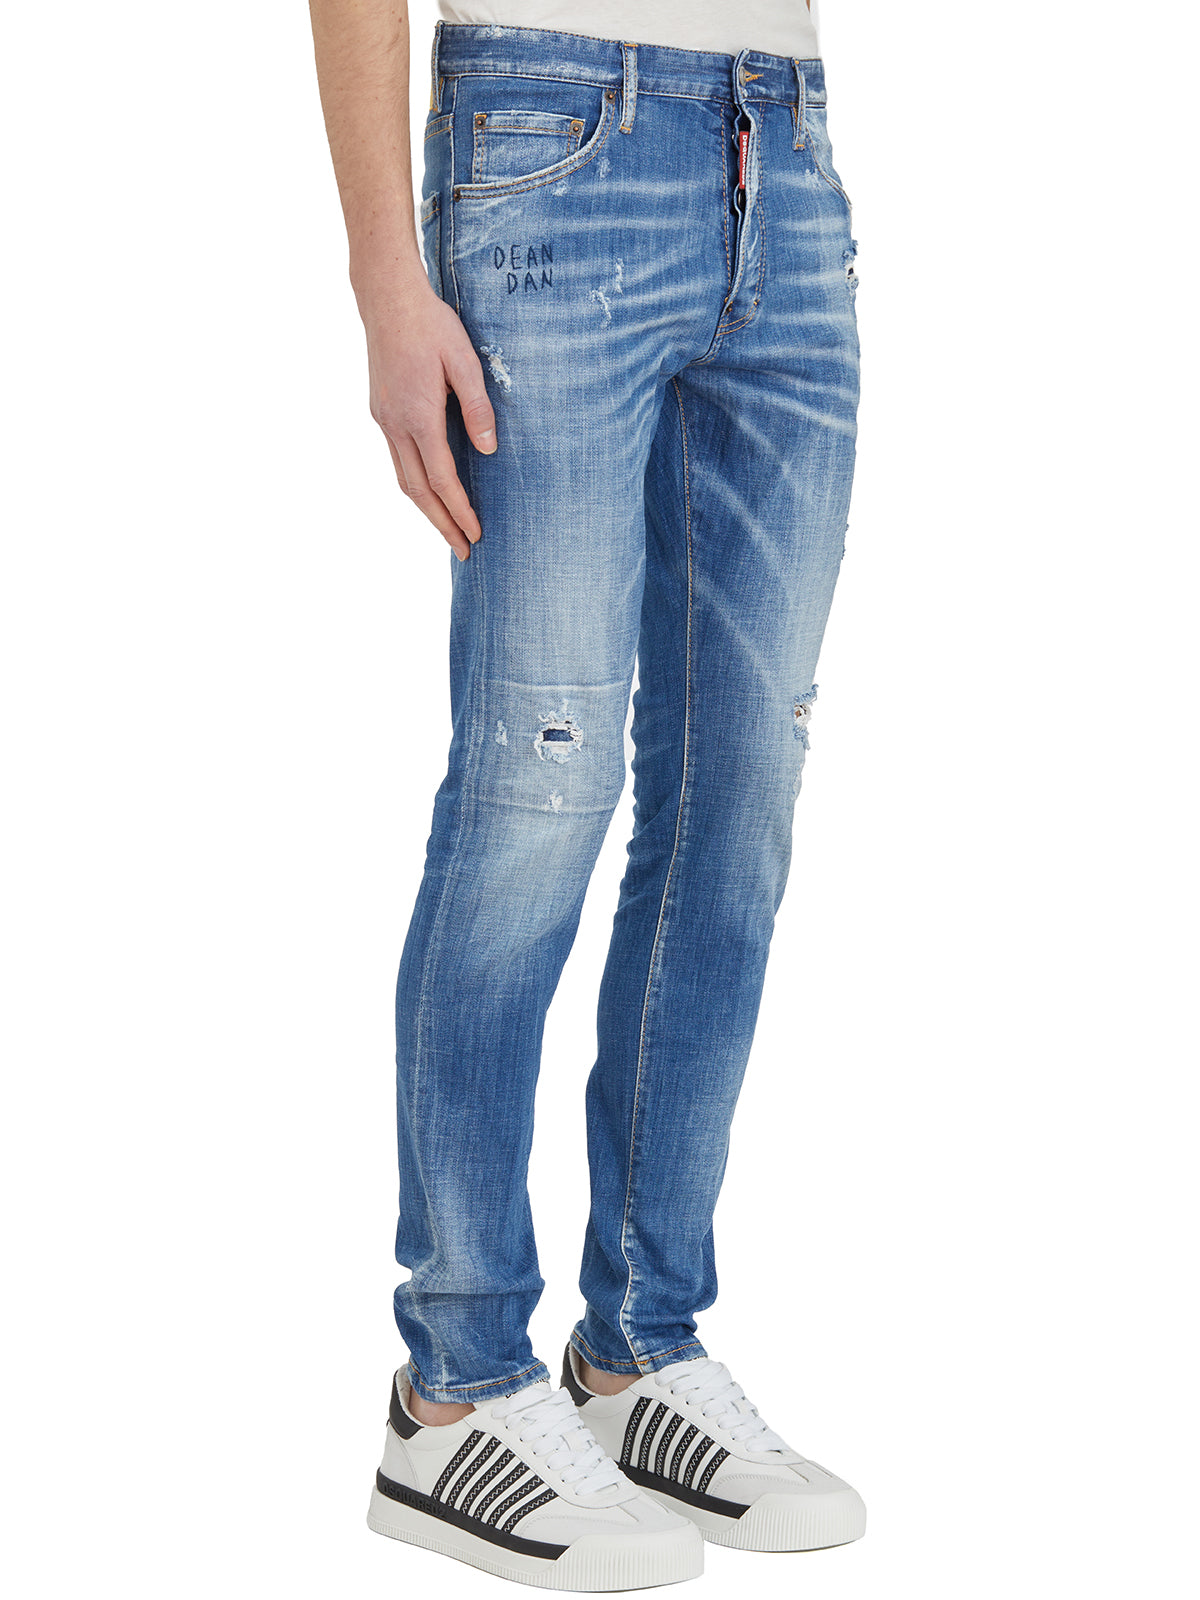 سروال جينز رجالي أزرق ممتد 5 جيوب بقصة متوسطة مع حلقات للحزام و بقياس 46